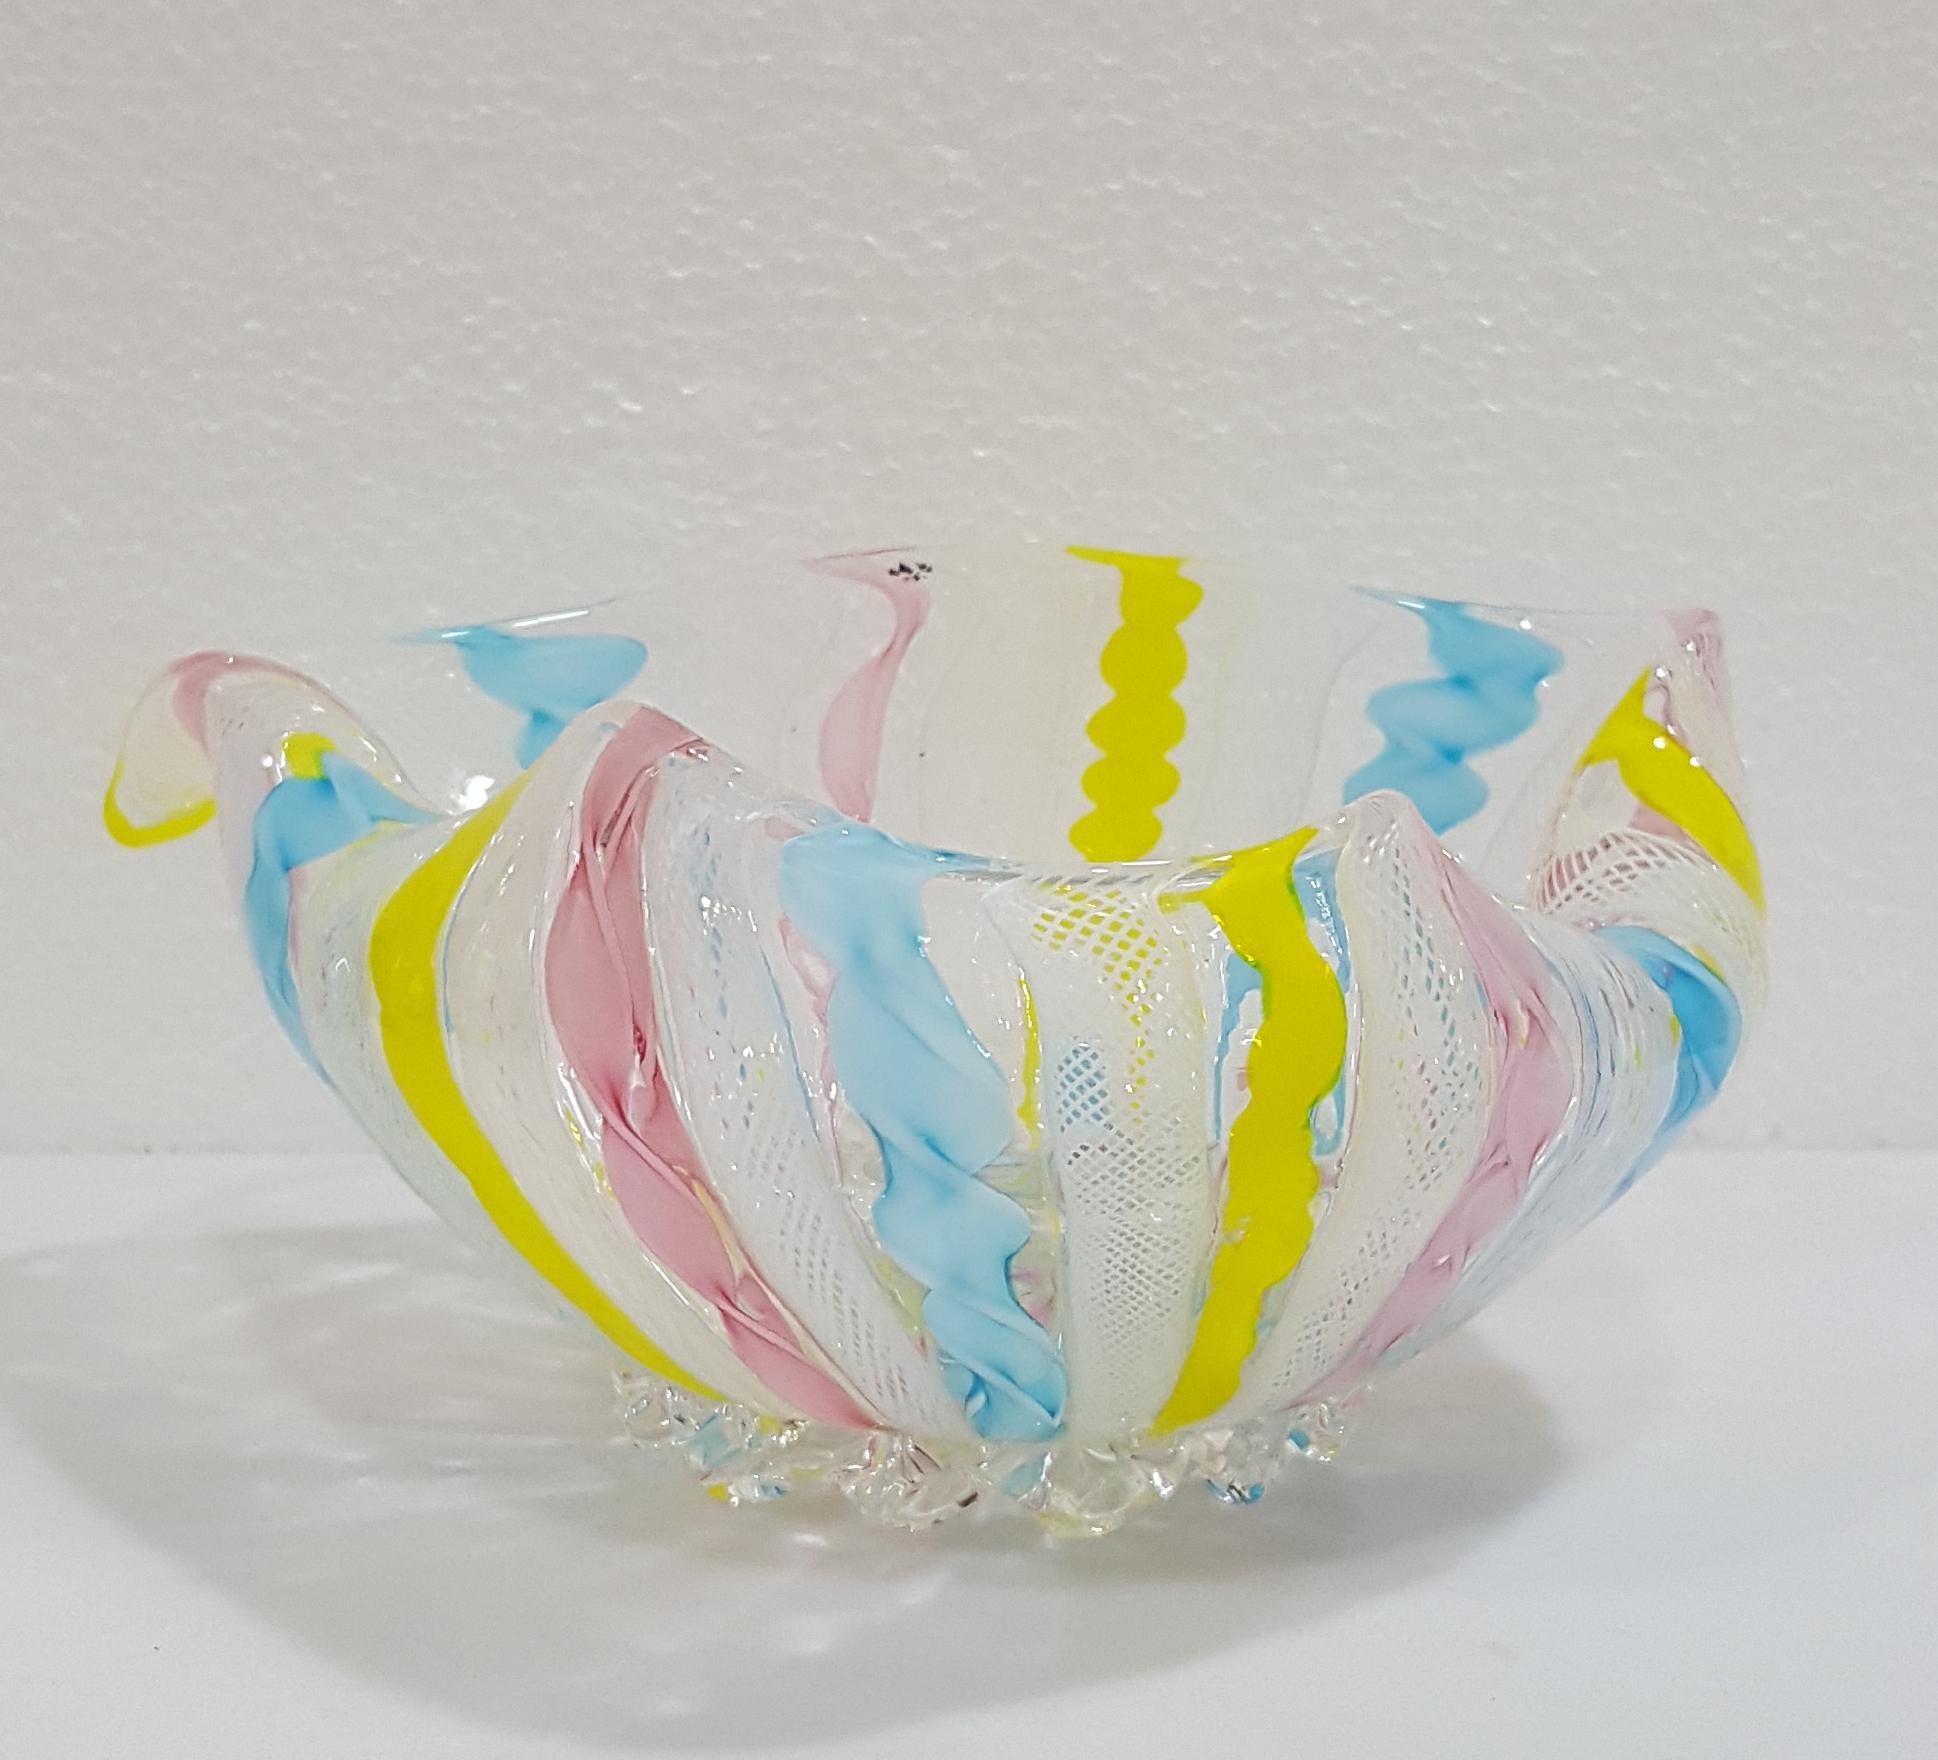 Verre de Murano Zanfirico Latticino Ribbon Glass Bowl/Trinket Dish. 
L'un des plus grands designs, il mesure environ 7